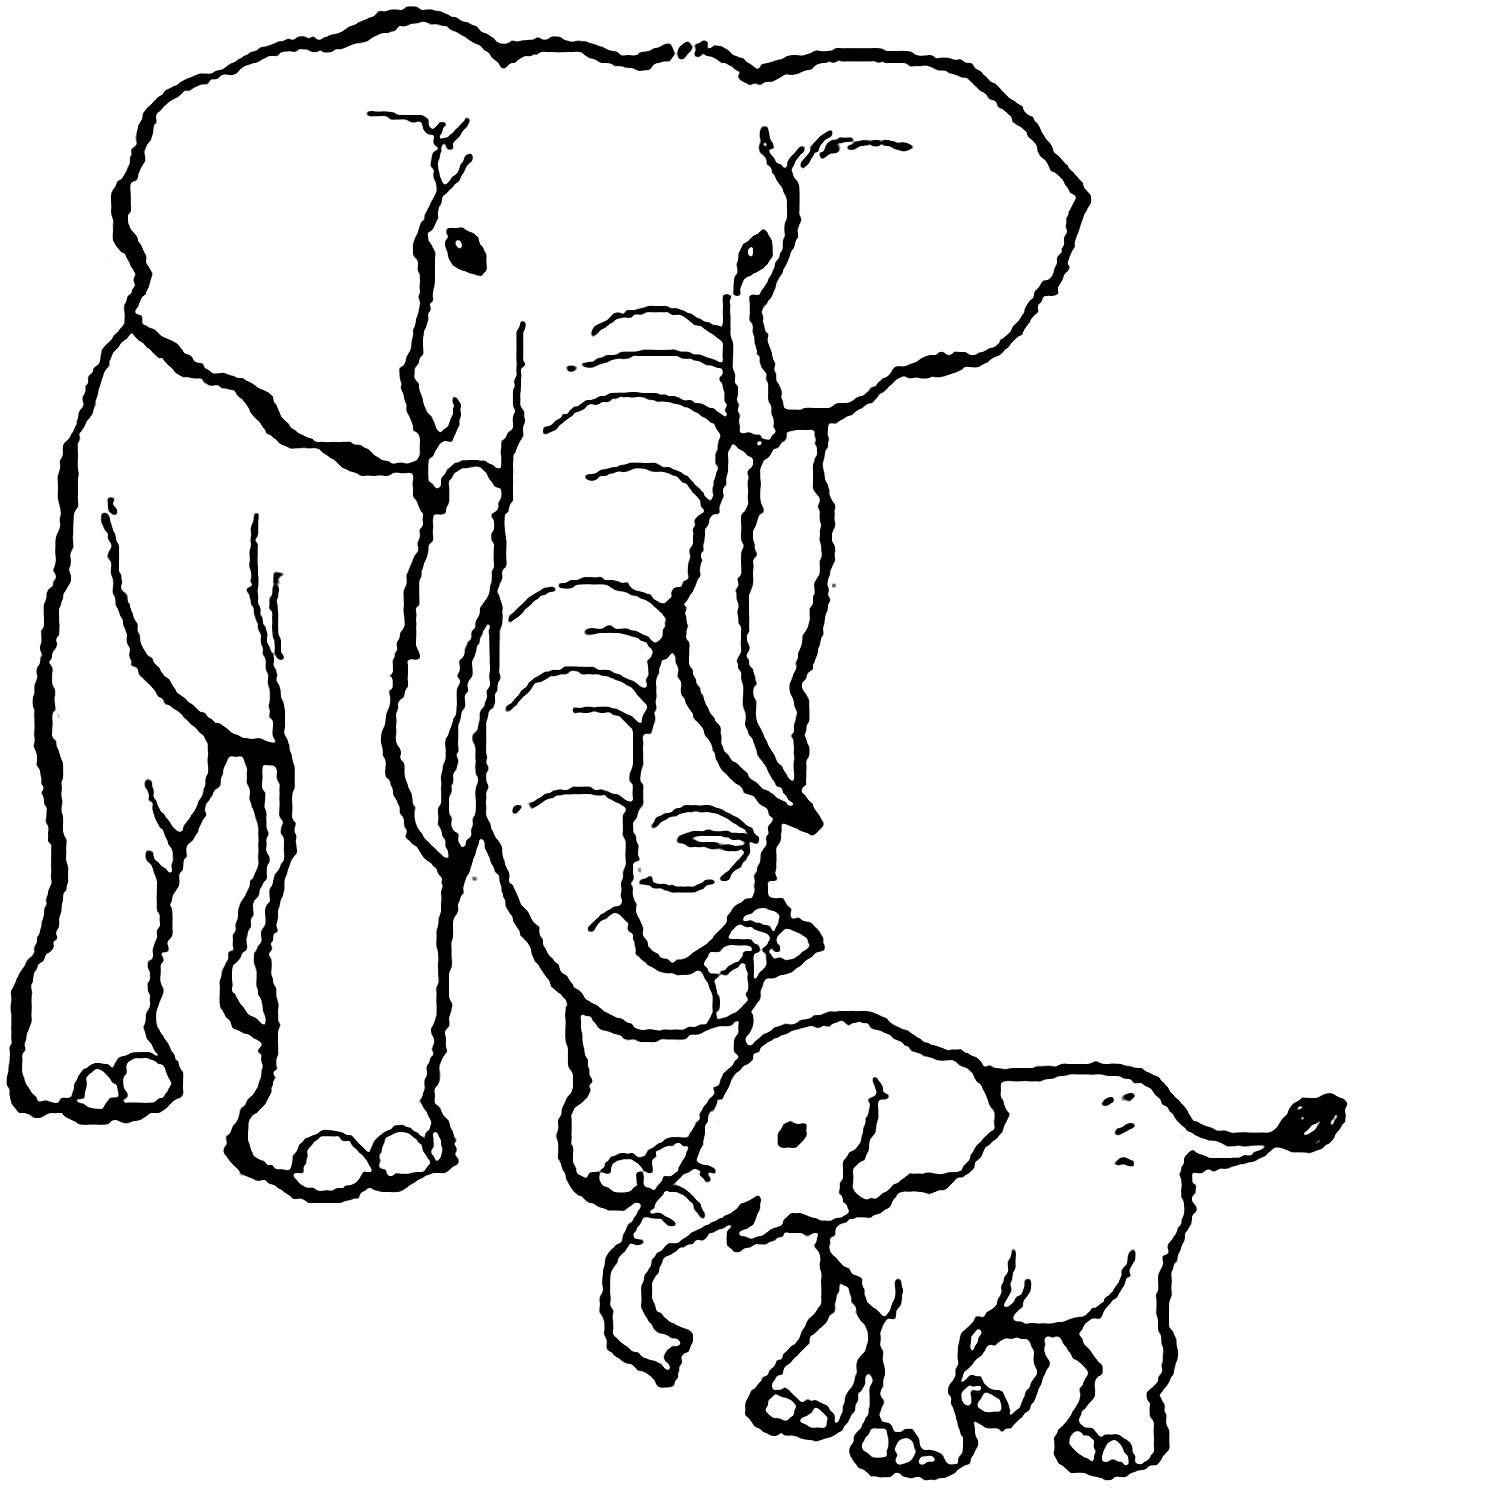 Imagen del elefante para que los niños la descarguen e impriman